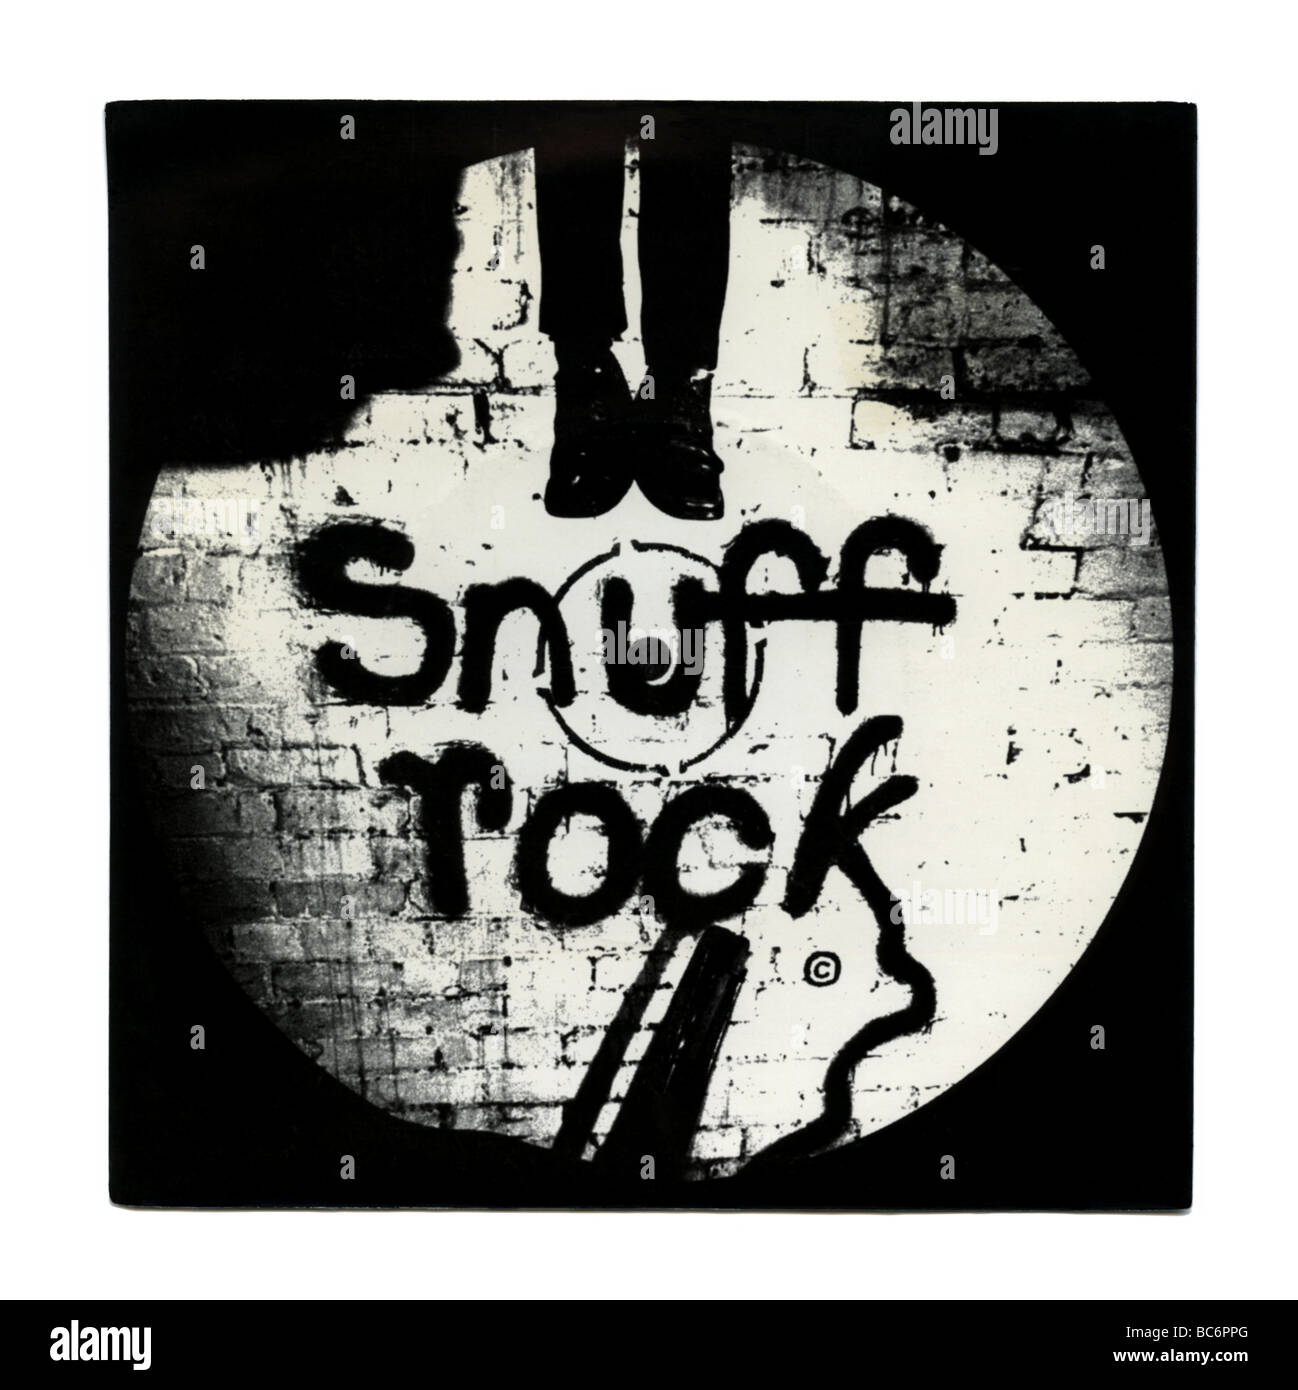 'Snuff Rock' EP par Alberto Y Lost Trios Paranoias, une comédie punk rock record a été publié la première fois en 1977 Banque D'Images